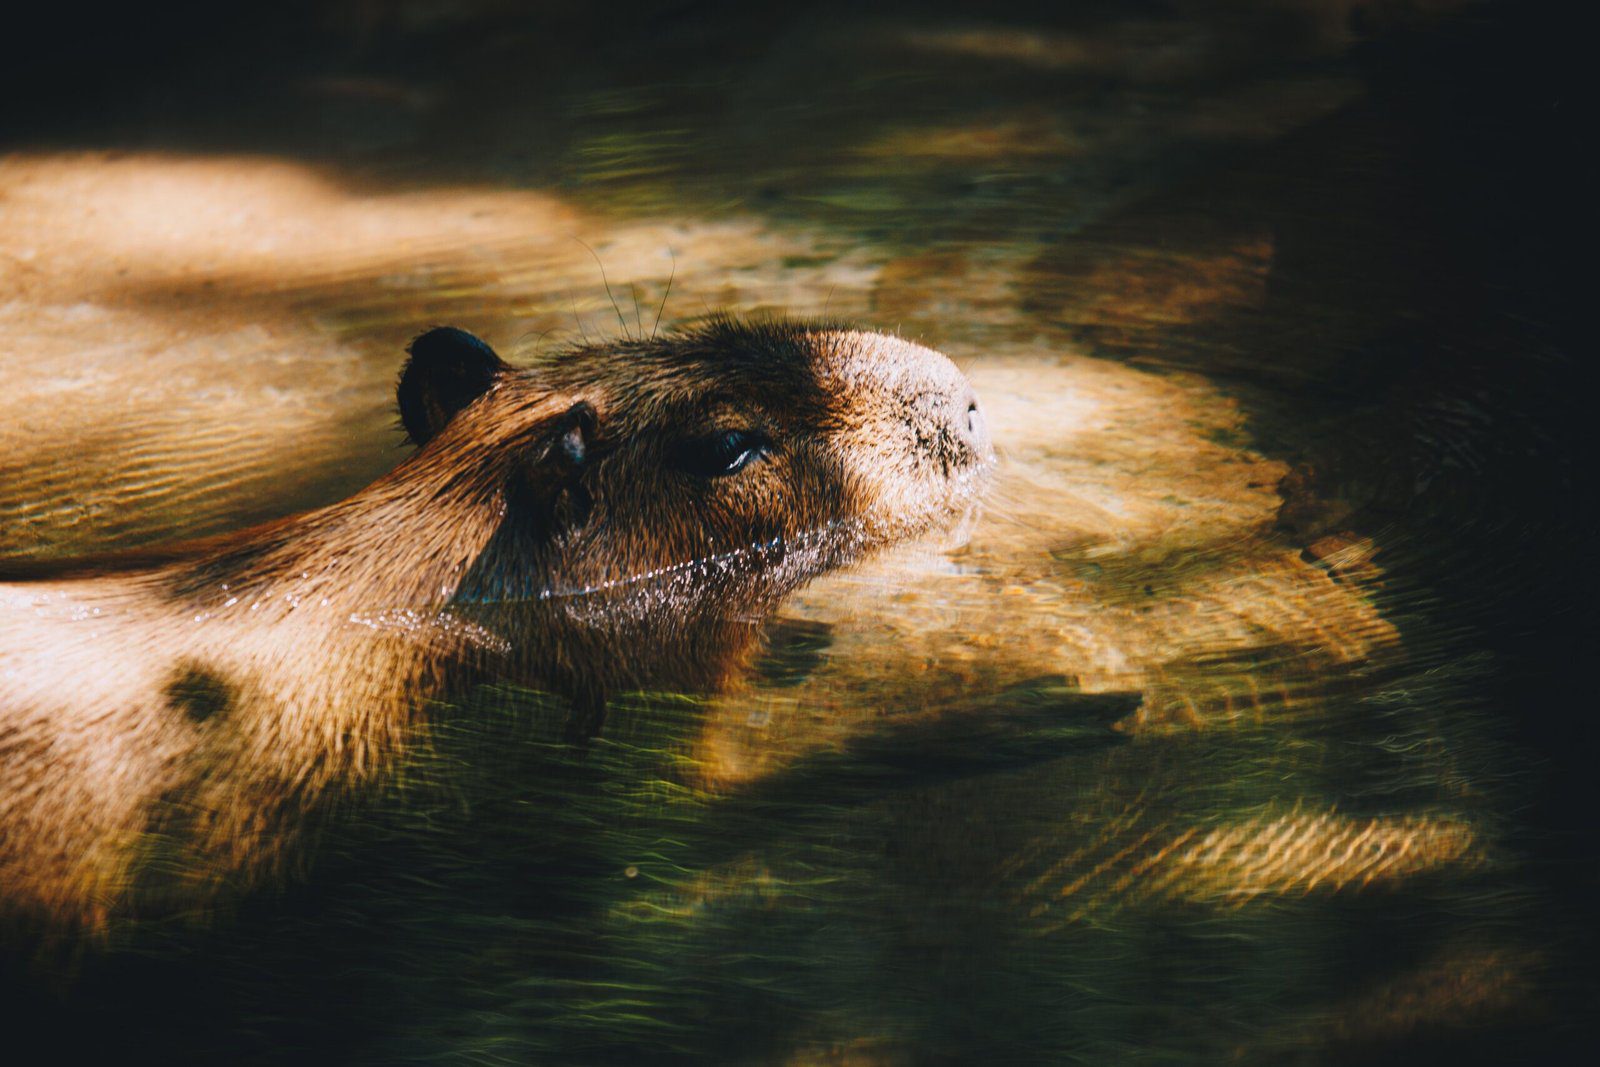 Can I legally keep a capybara as a pet?